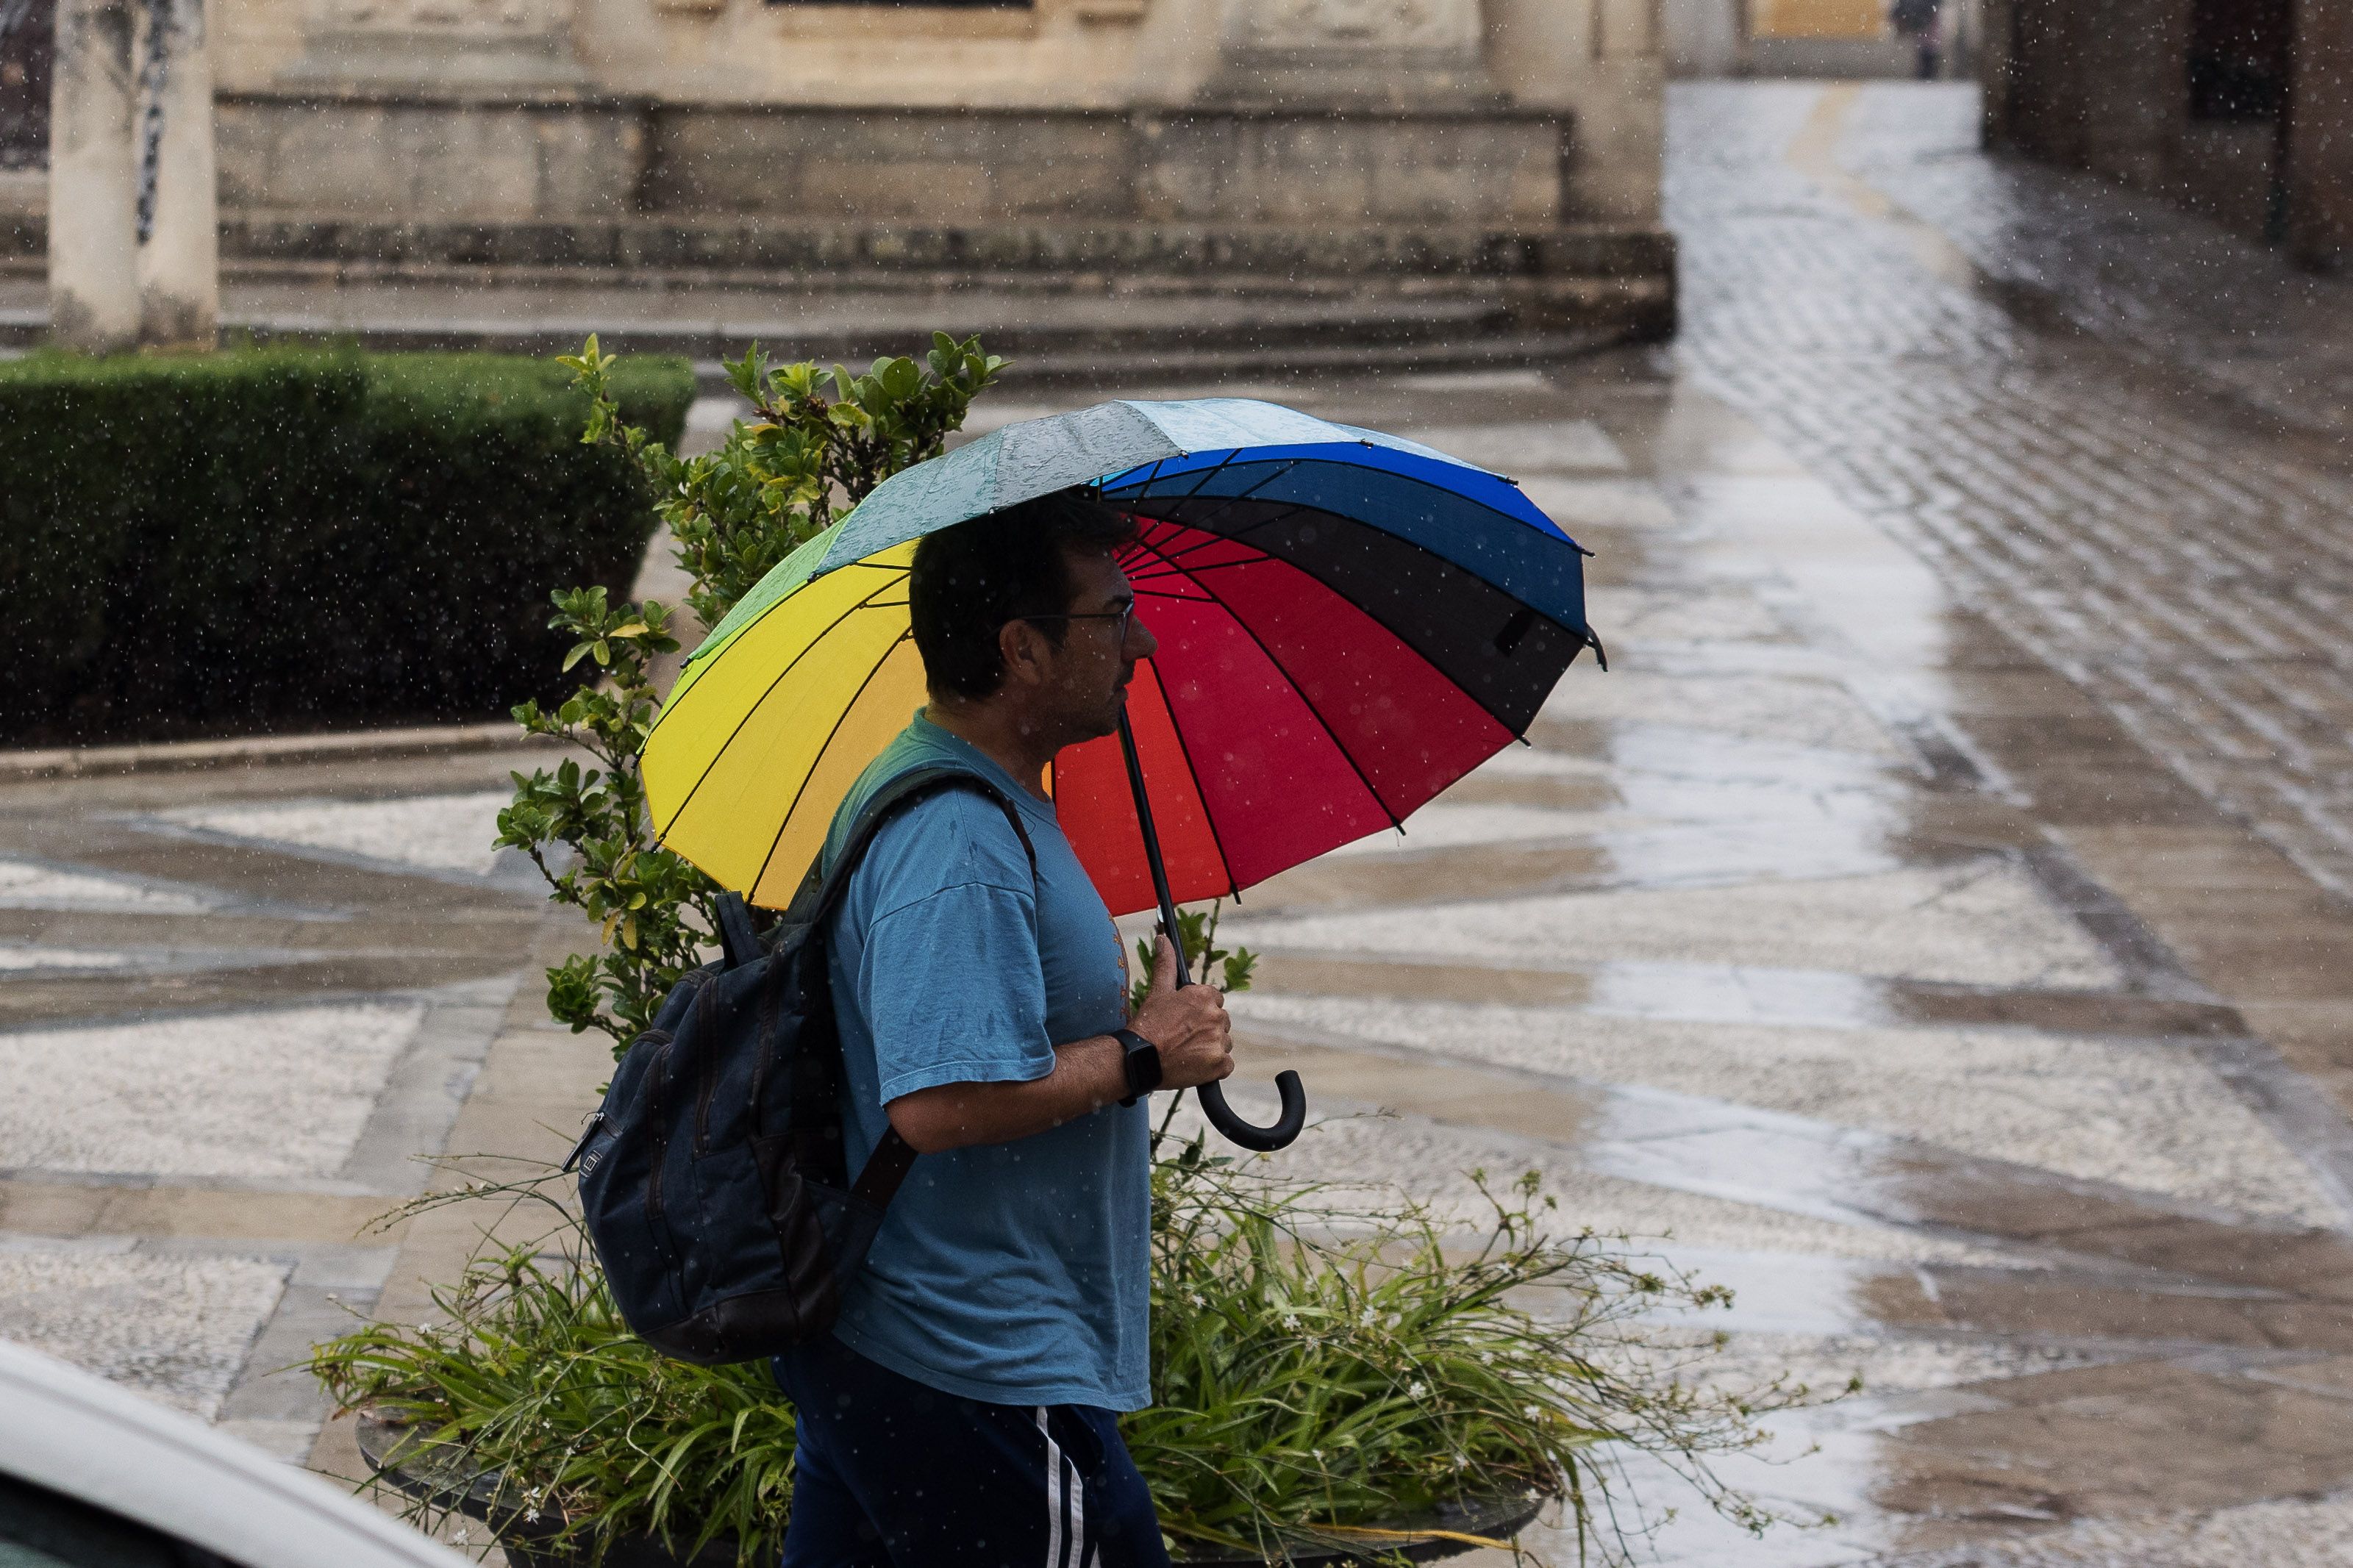 Un ciudadano pasea con paraguas en mano un día de lluvia.